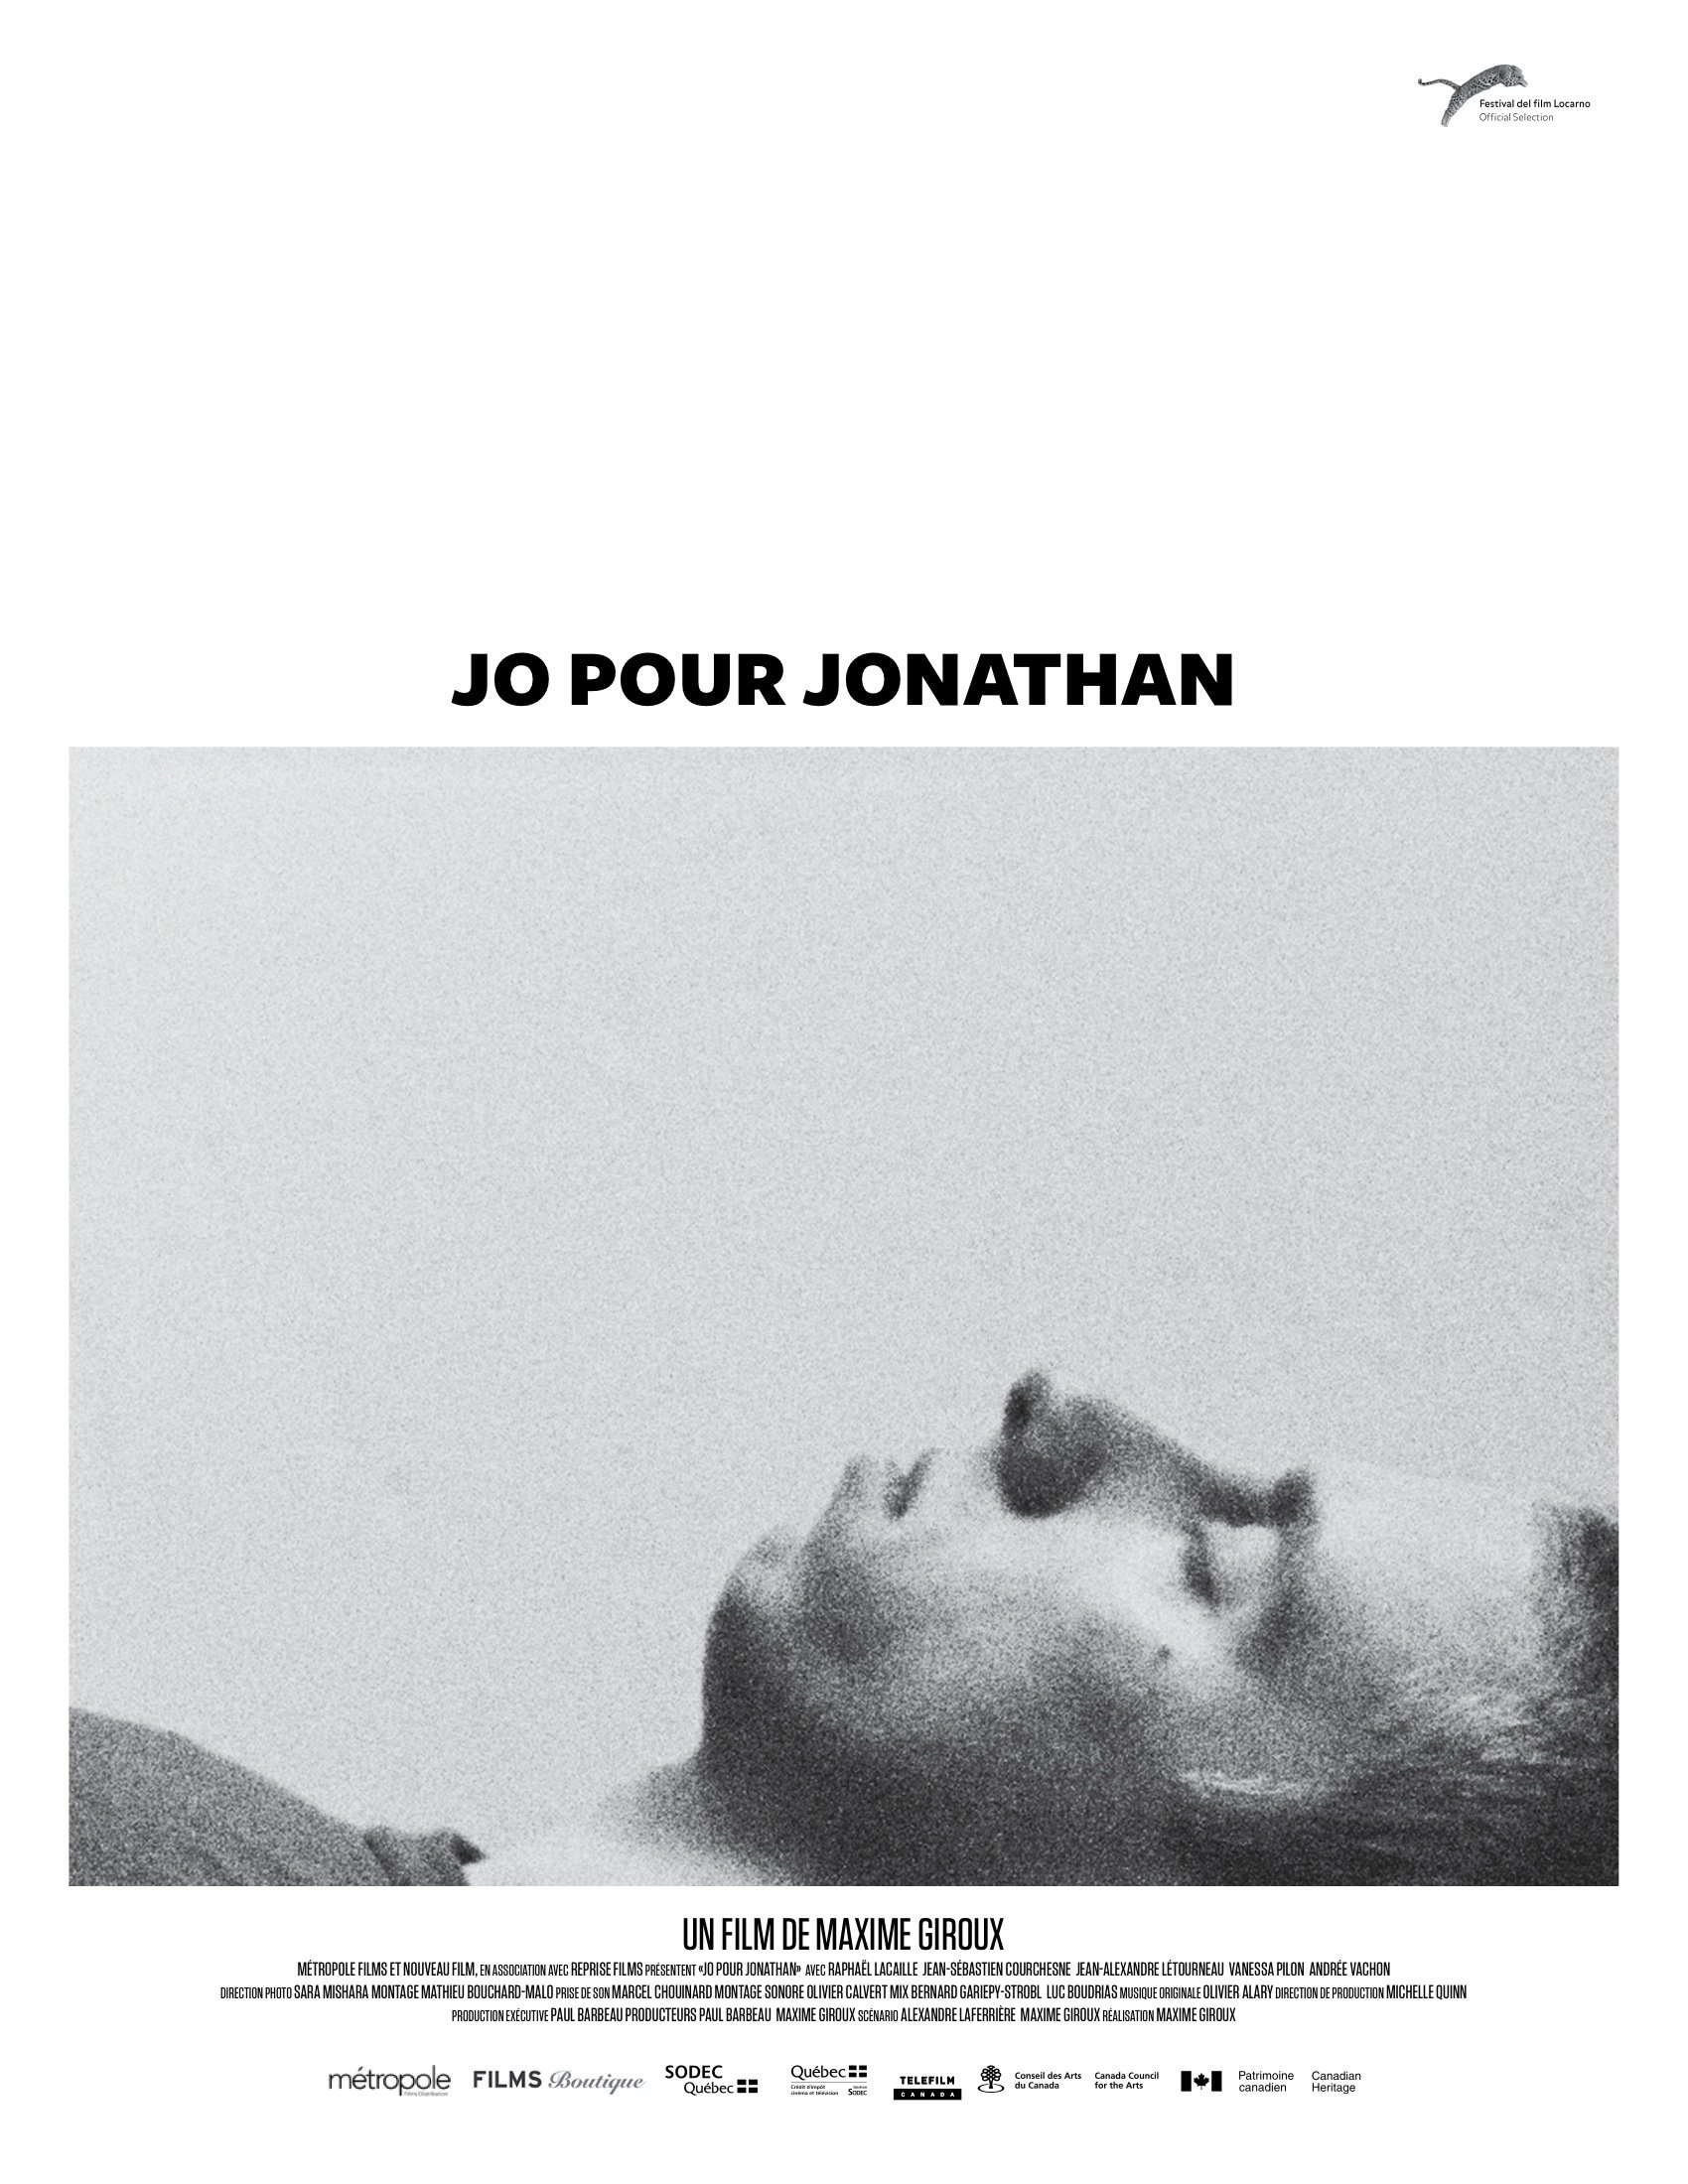 Jo for Jonathan